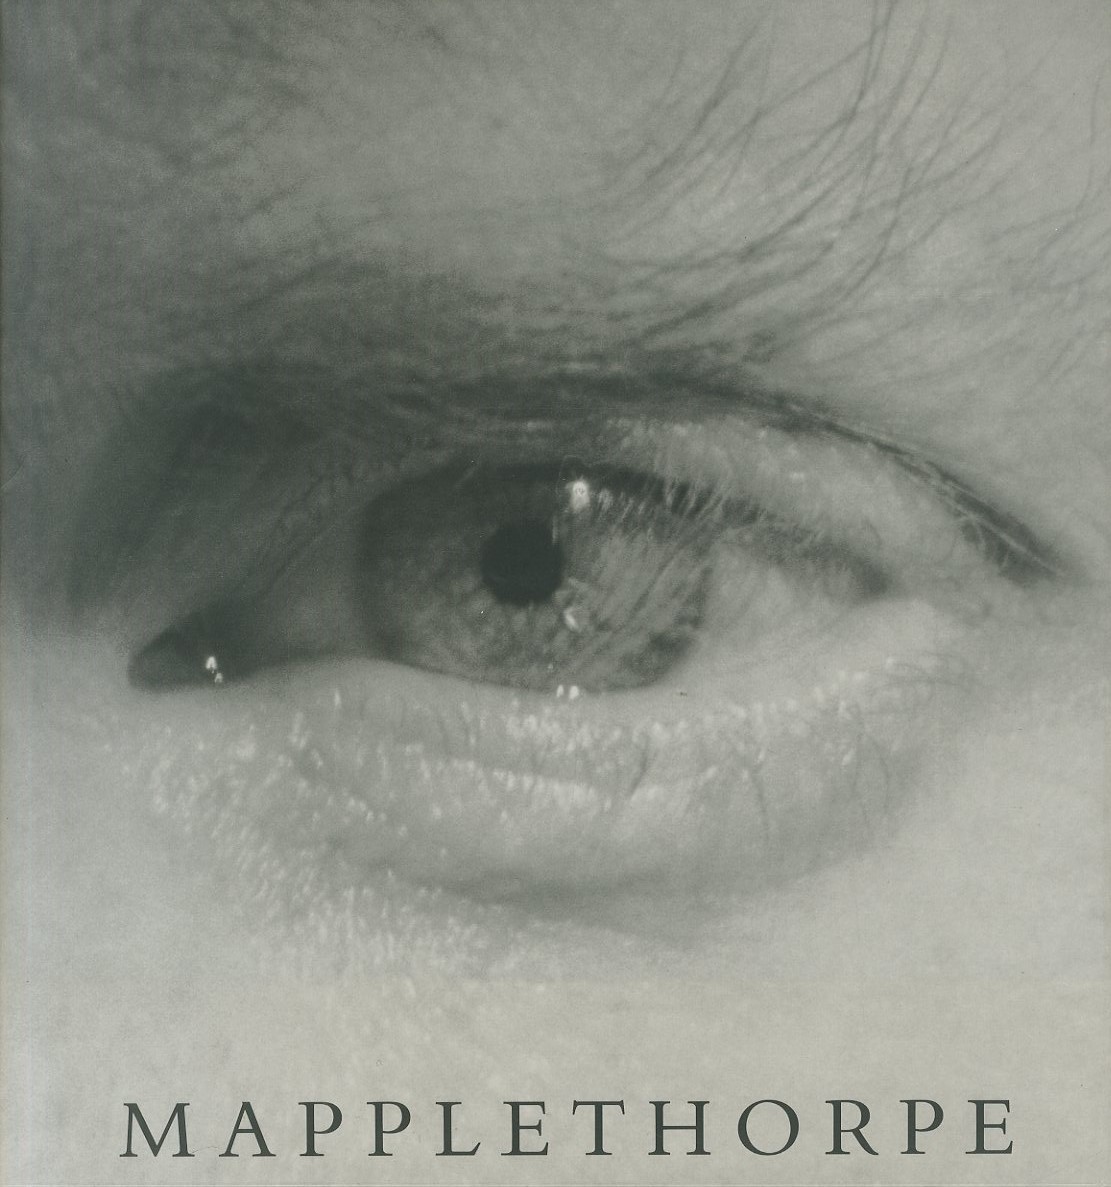 「Mapplethorpe / Robert Mapplethorpe」メイン画像